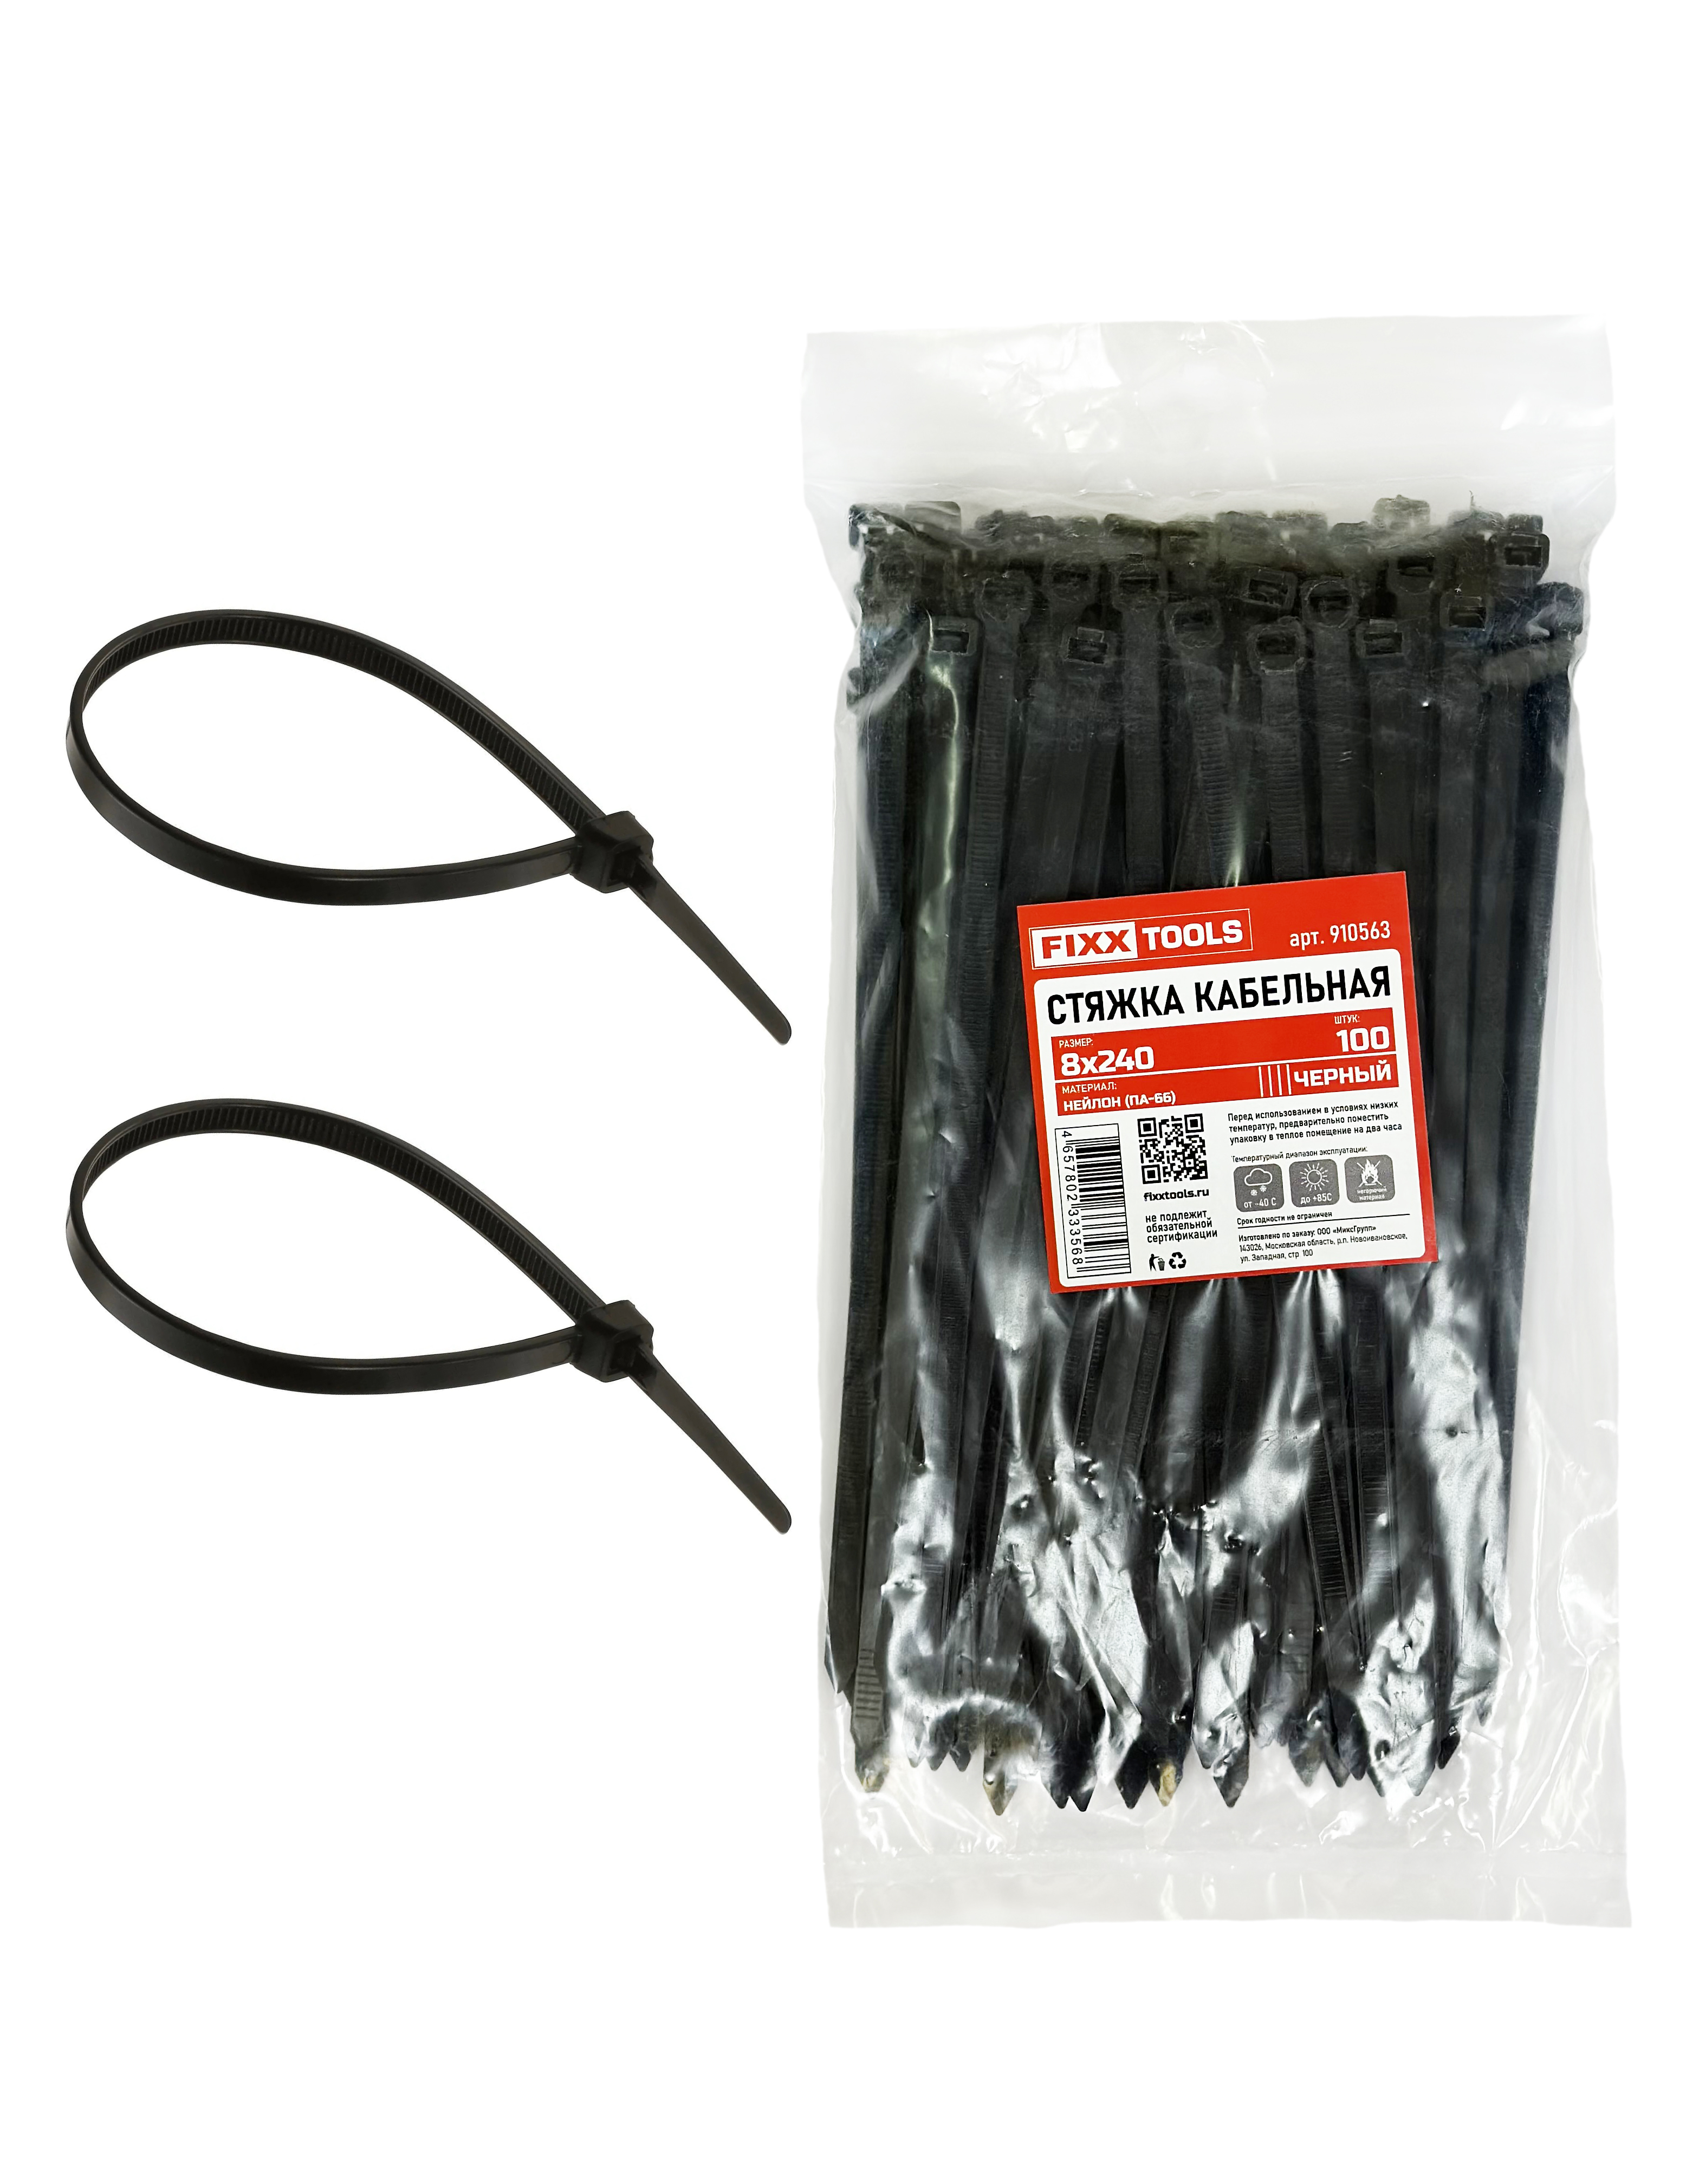 Стяжка кабельная FIXXTOOLS 8х240мм черная упак 100шт 910563 кабельная розетка abs пластик прямая с з 16а 250в ip20 черная 24208 6 rev